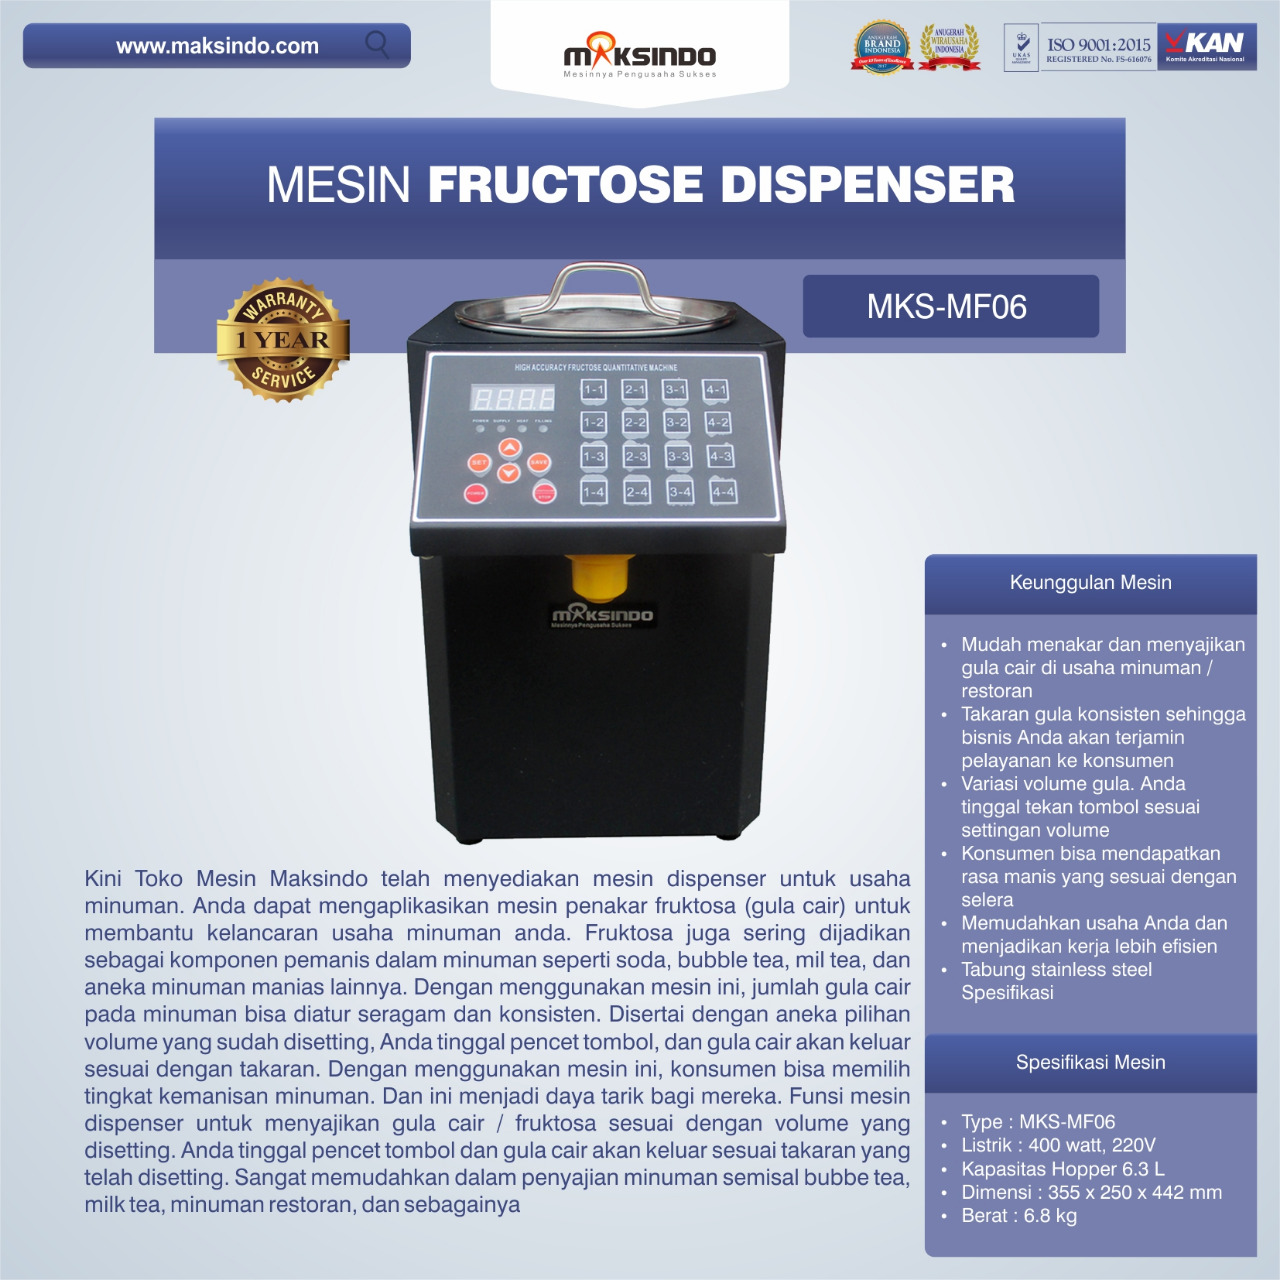 Jual Mesin Fructose Dispenser MKS-MF06 di Pekanbaru